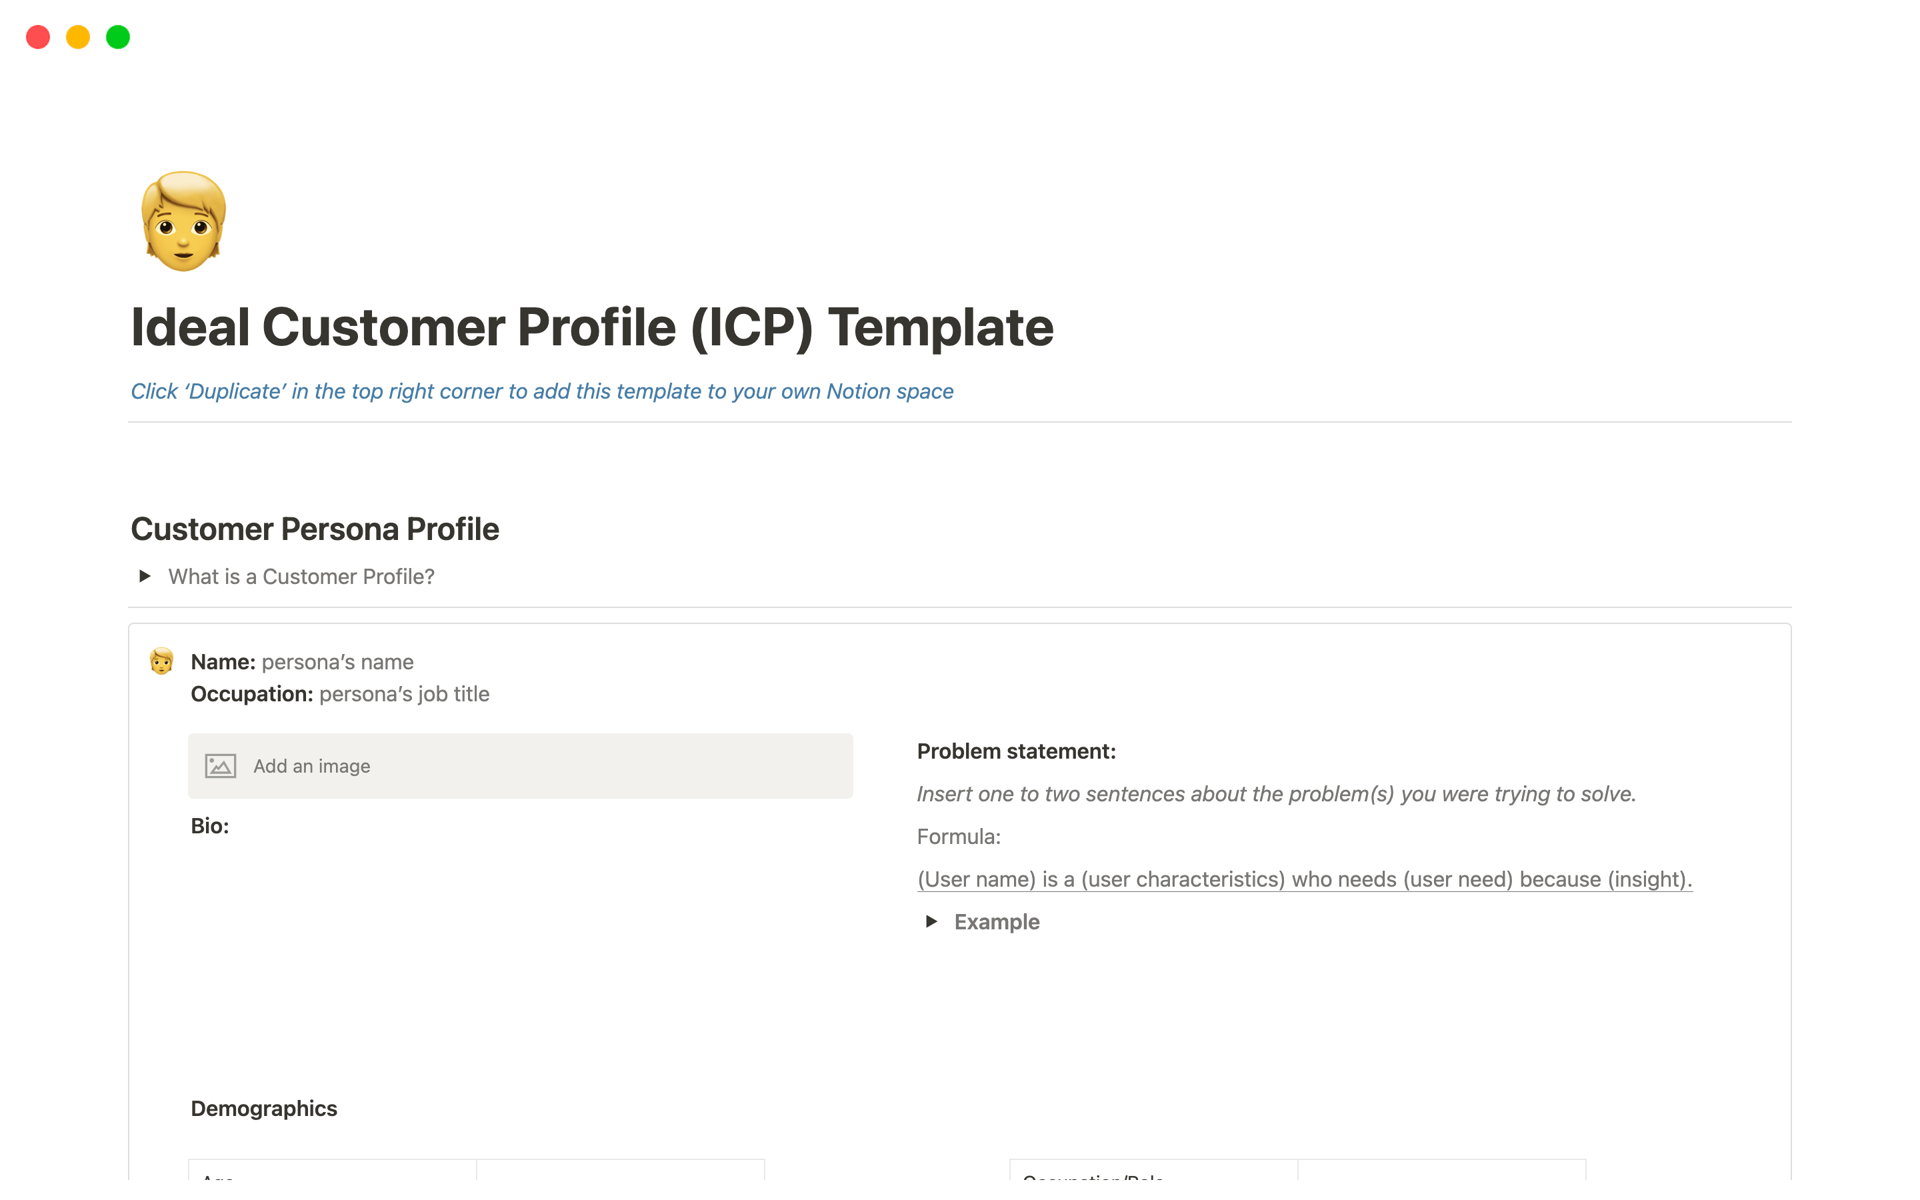 Uma prévia do modelo para Ideal Customer Profile (ICP)